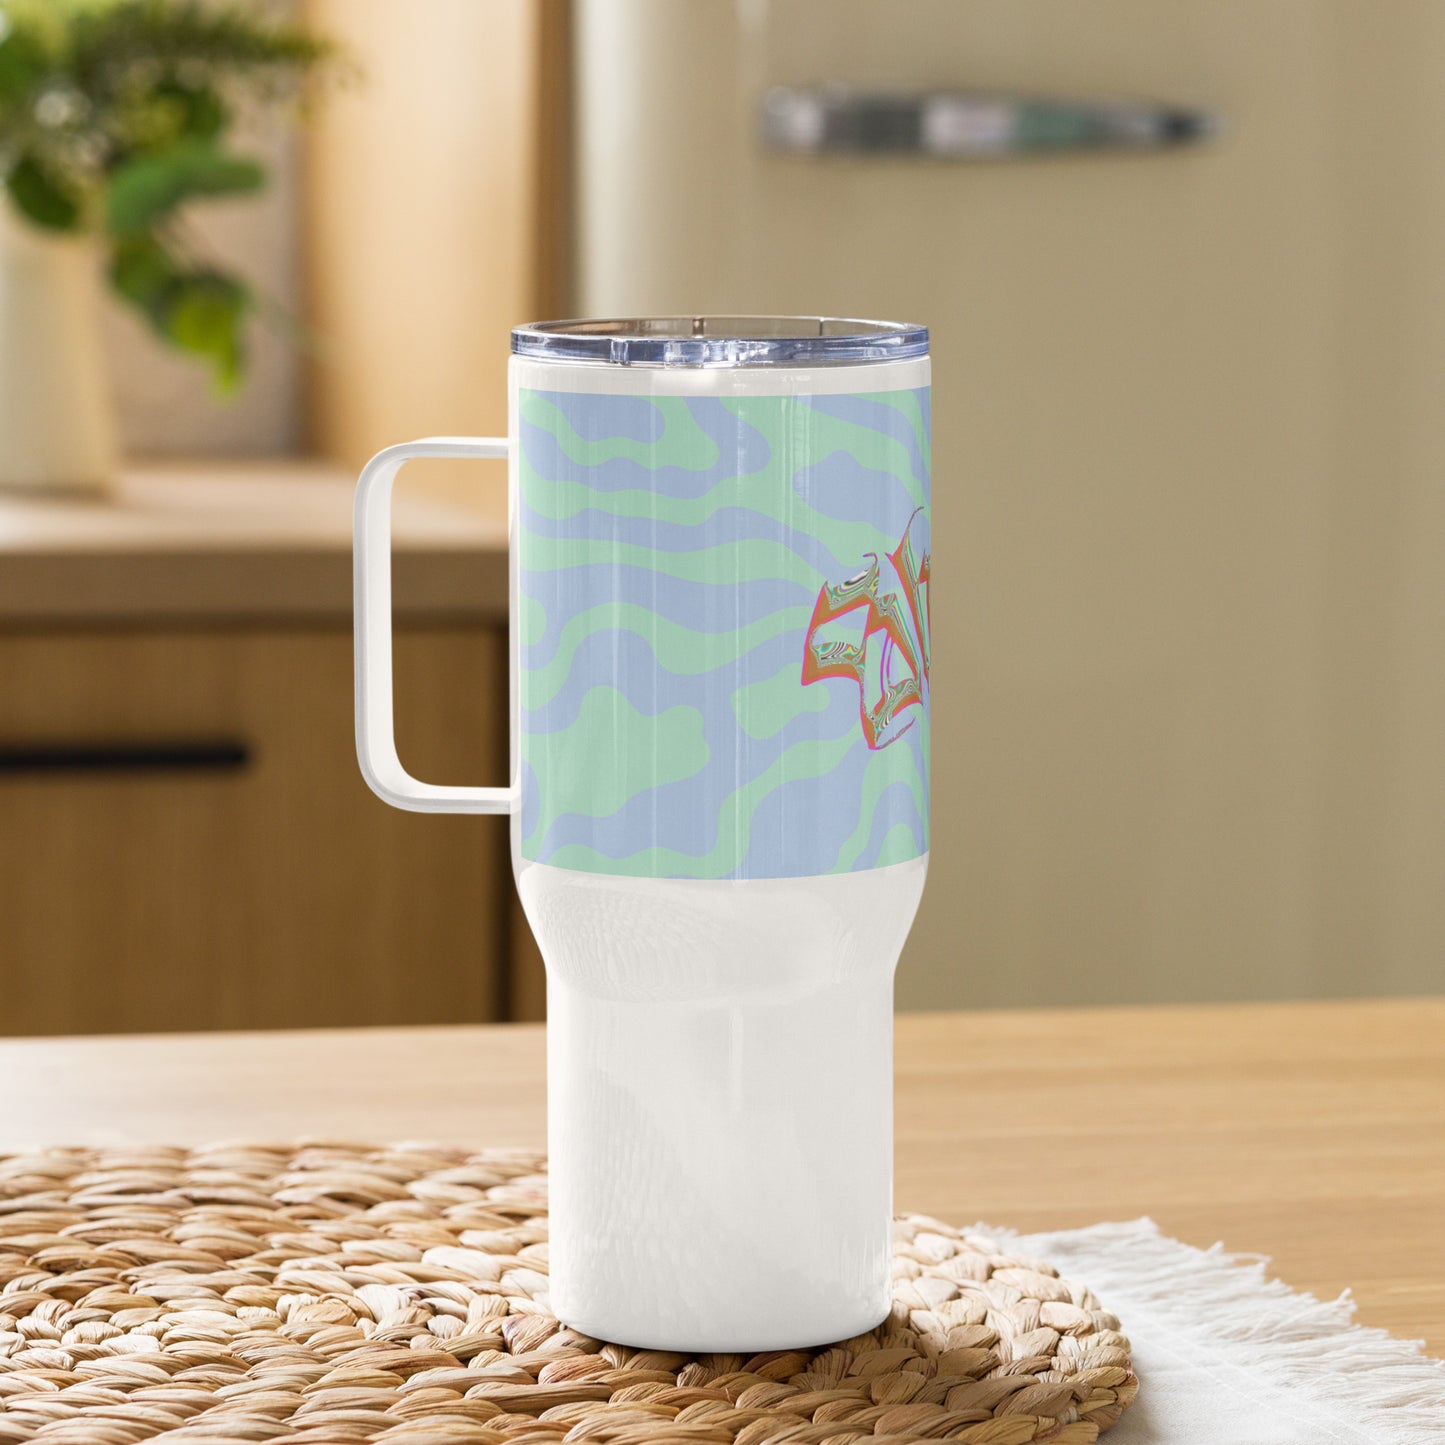 She-eo Travel mug with a handle